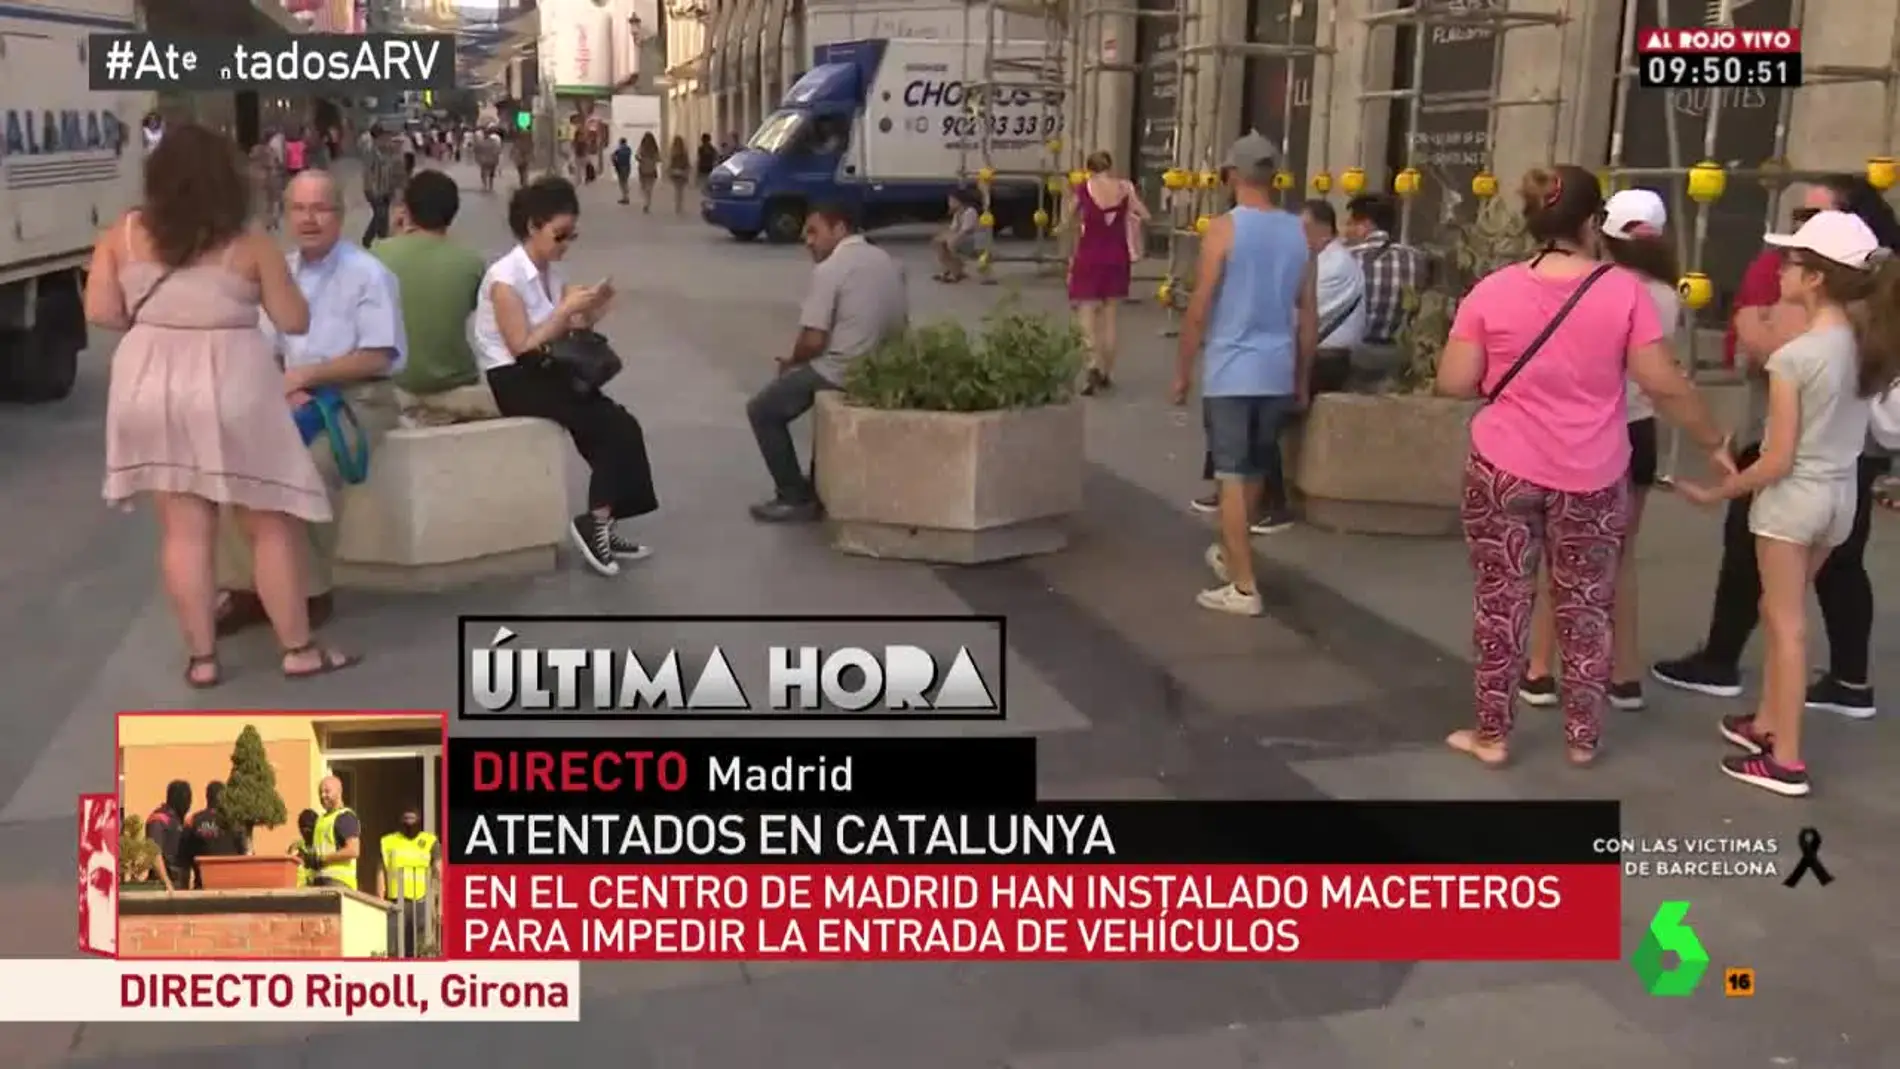 Los maceteros instalados en la Puerta del Sol tras los atentados de Barcelona